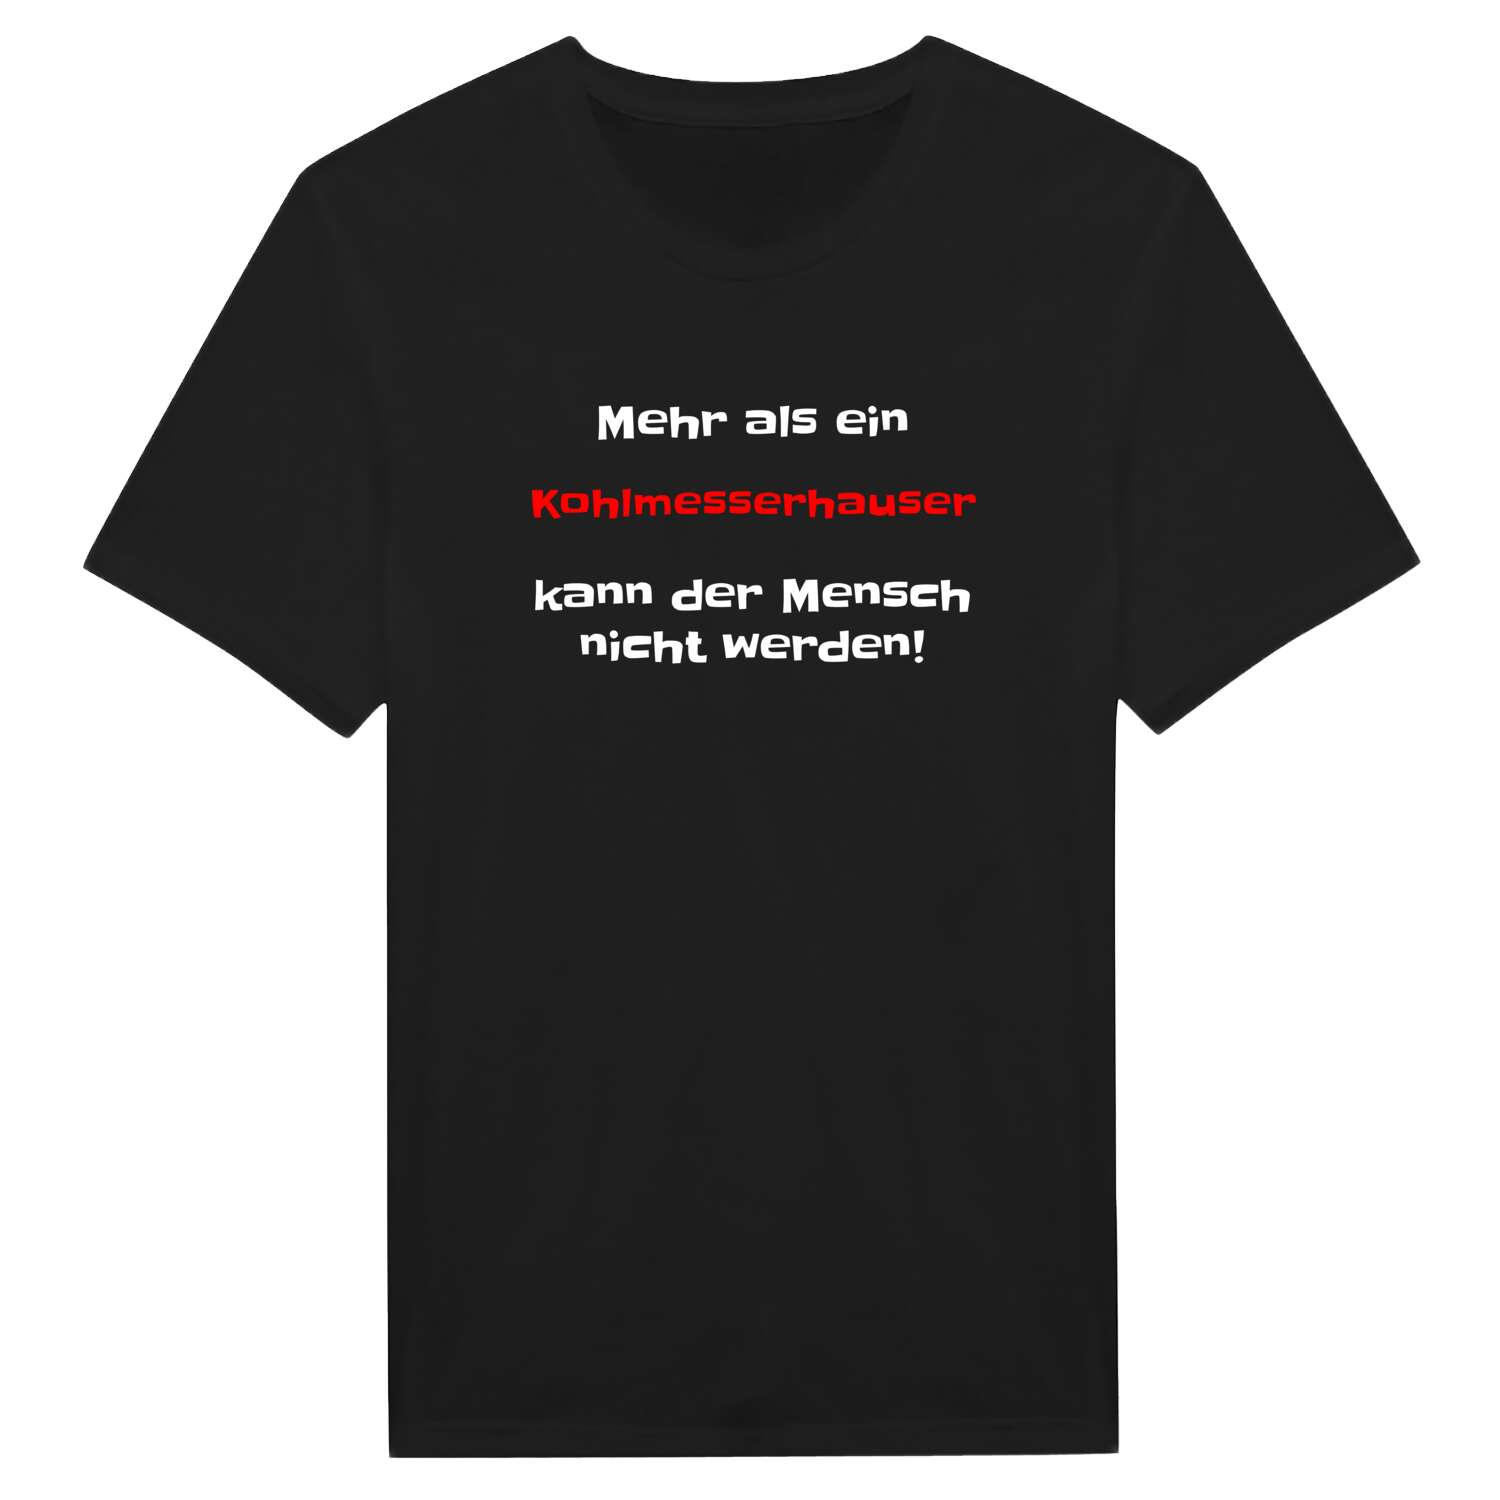 Kohlmesserhaus T-Shirt »Mehr als ein«